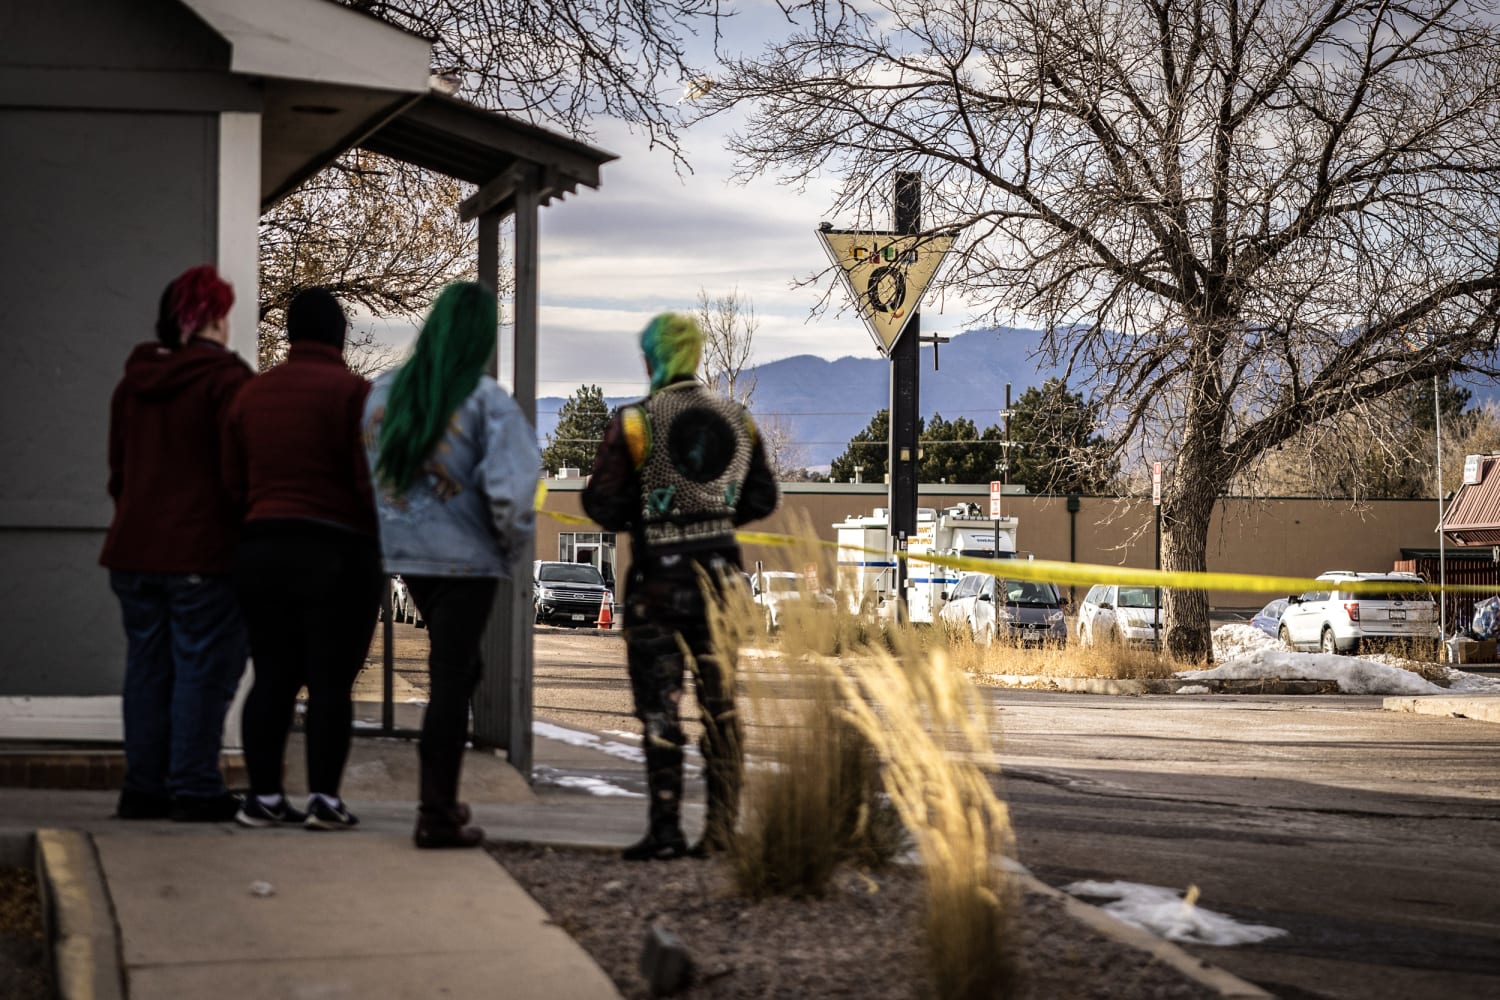 Club Q survivors blame hateful rhetoric for Colorado Springs shooting